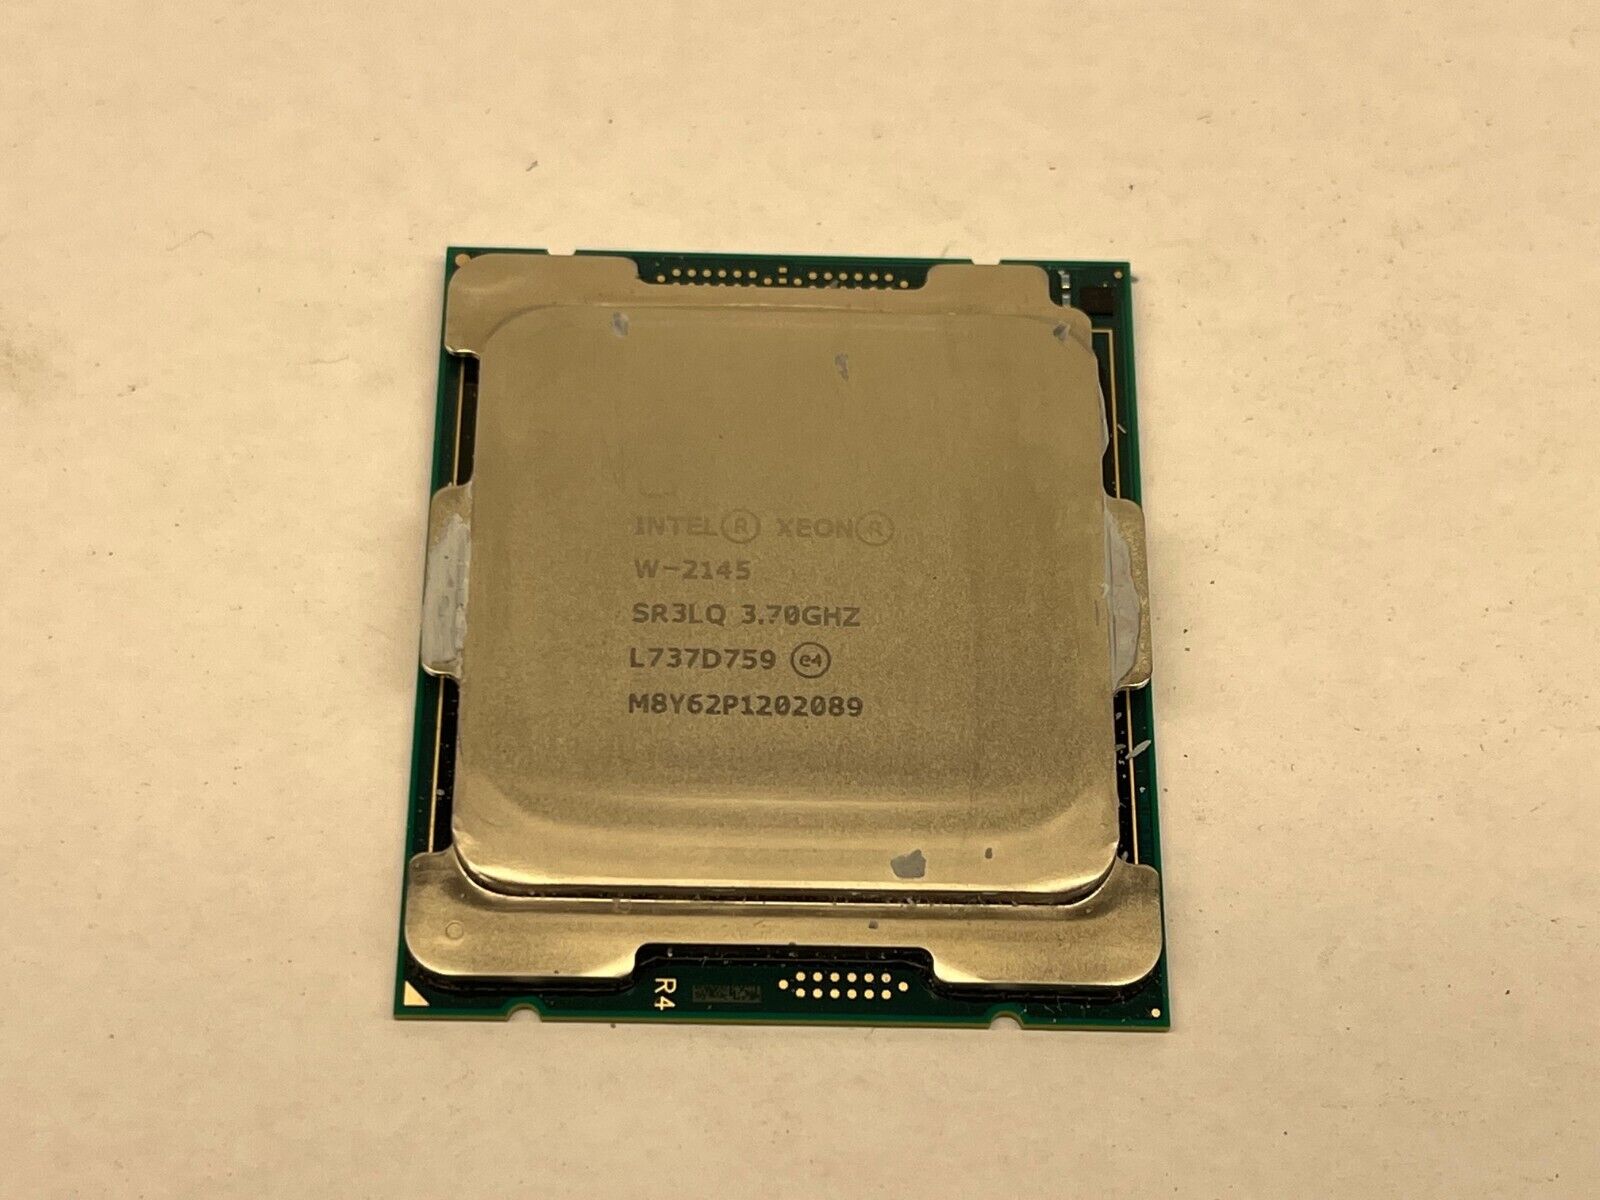 Intel Xeon W-2145 8-Core 3.70GHz 11MB LGA2066 Processor SR3LQ